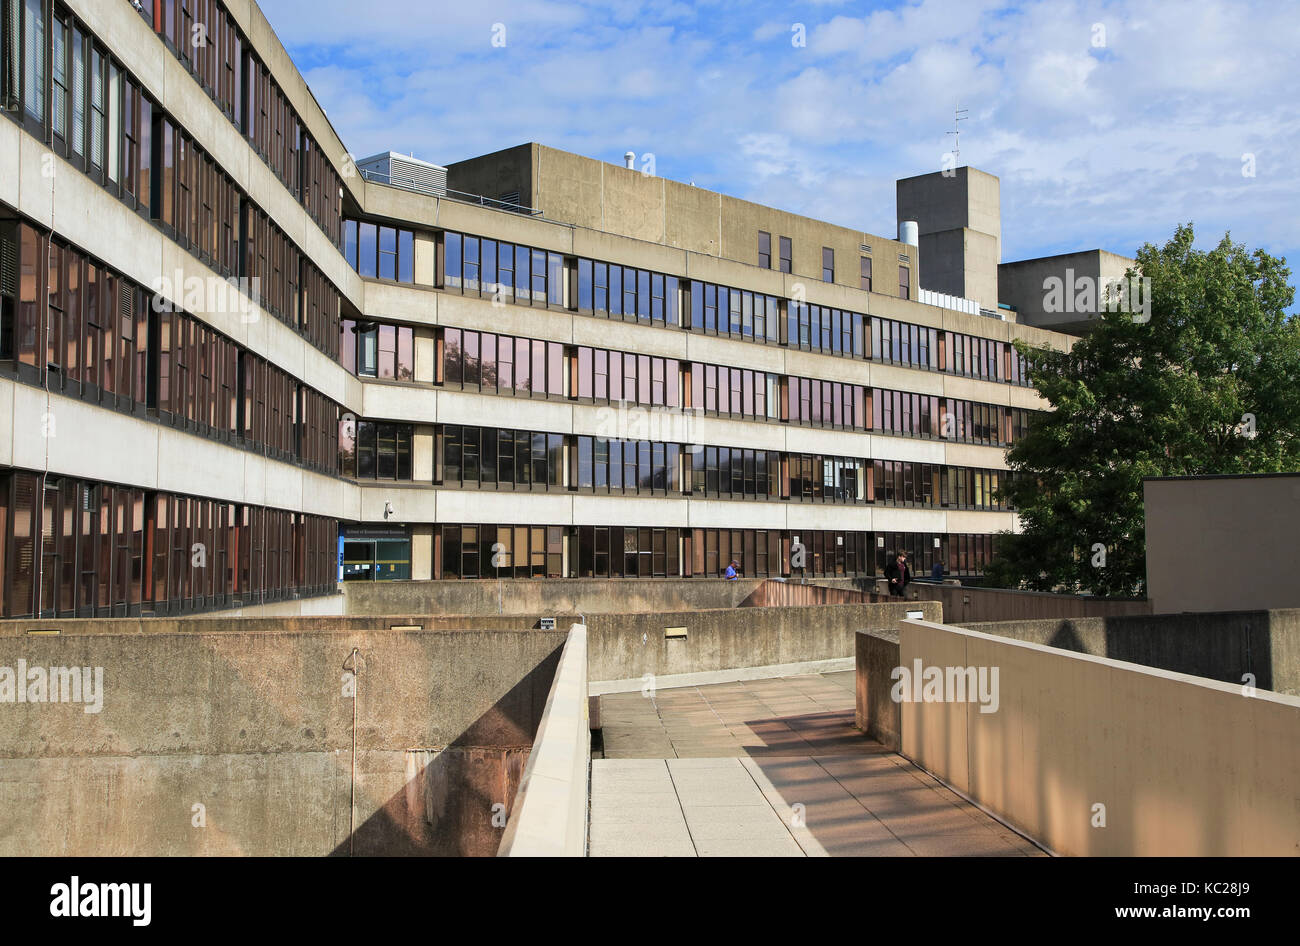 Les bâtiments d'architecture moderne campus de l'Université d'East Anglia, Norwich, Norfolk, England, UK Banque D'Images